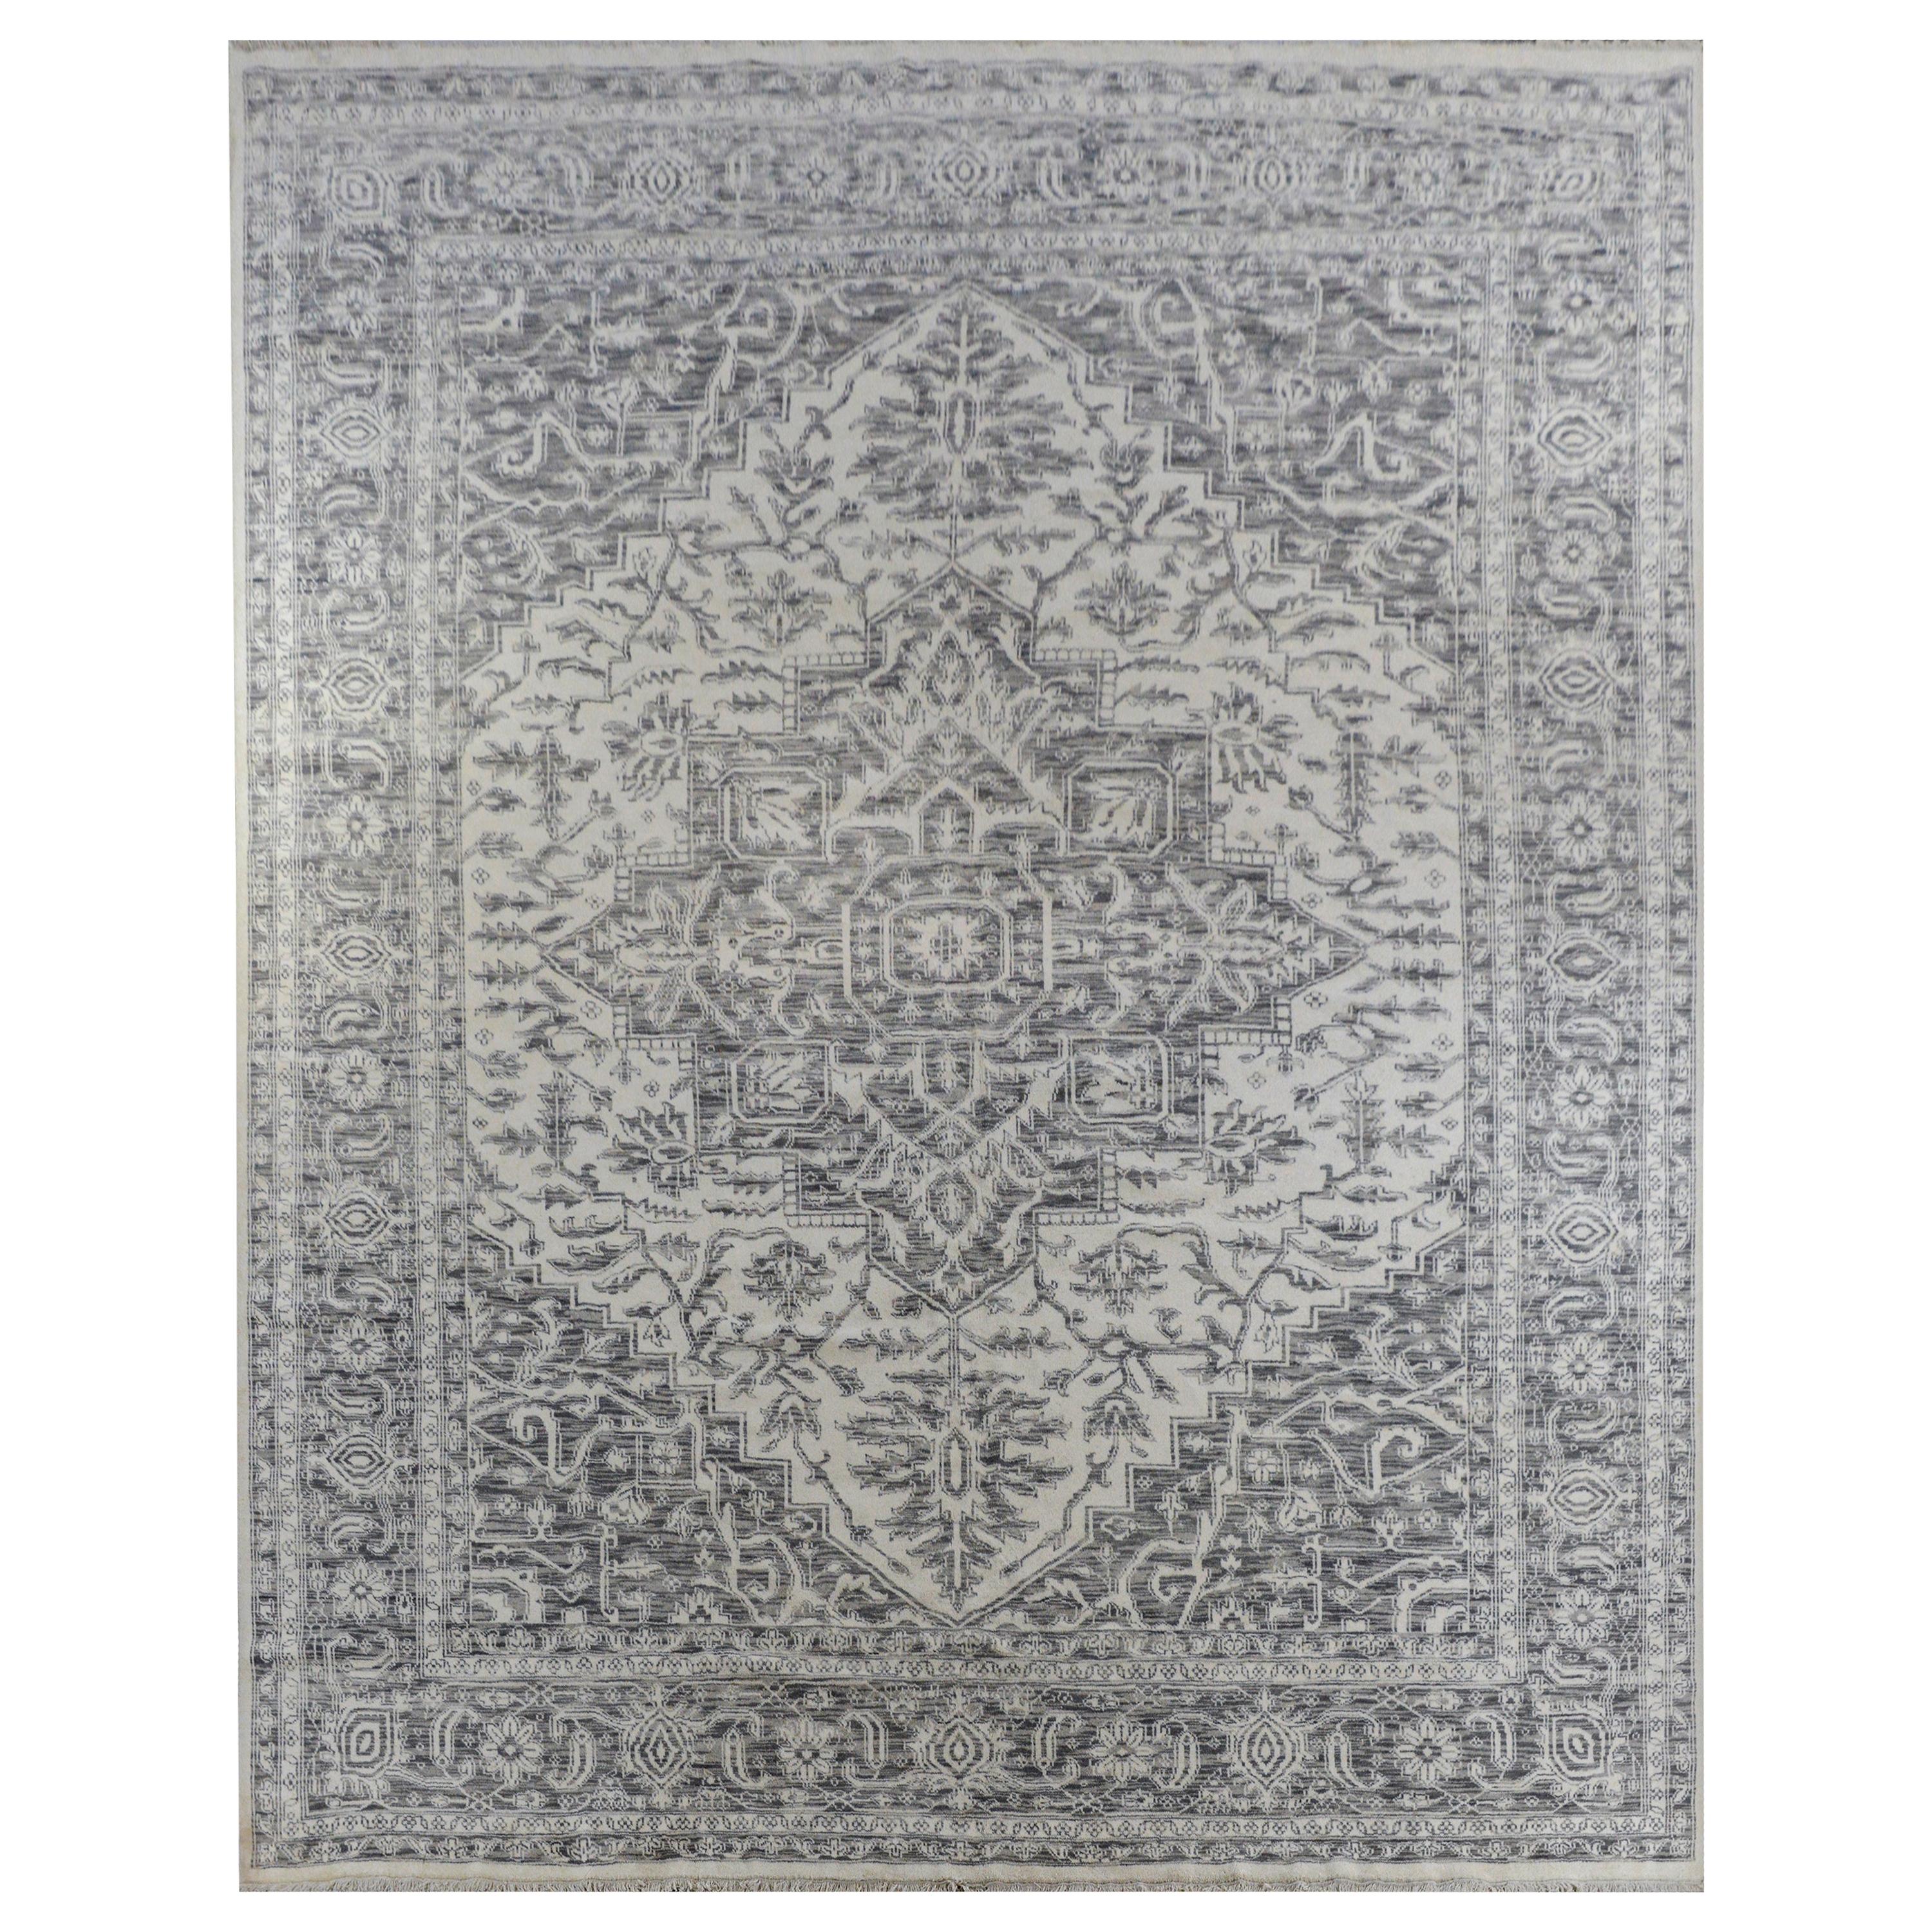 Wunderschöner zeitgenössischer indischer Serpai-Teppich